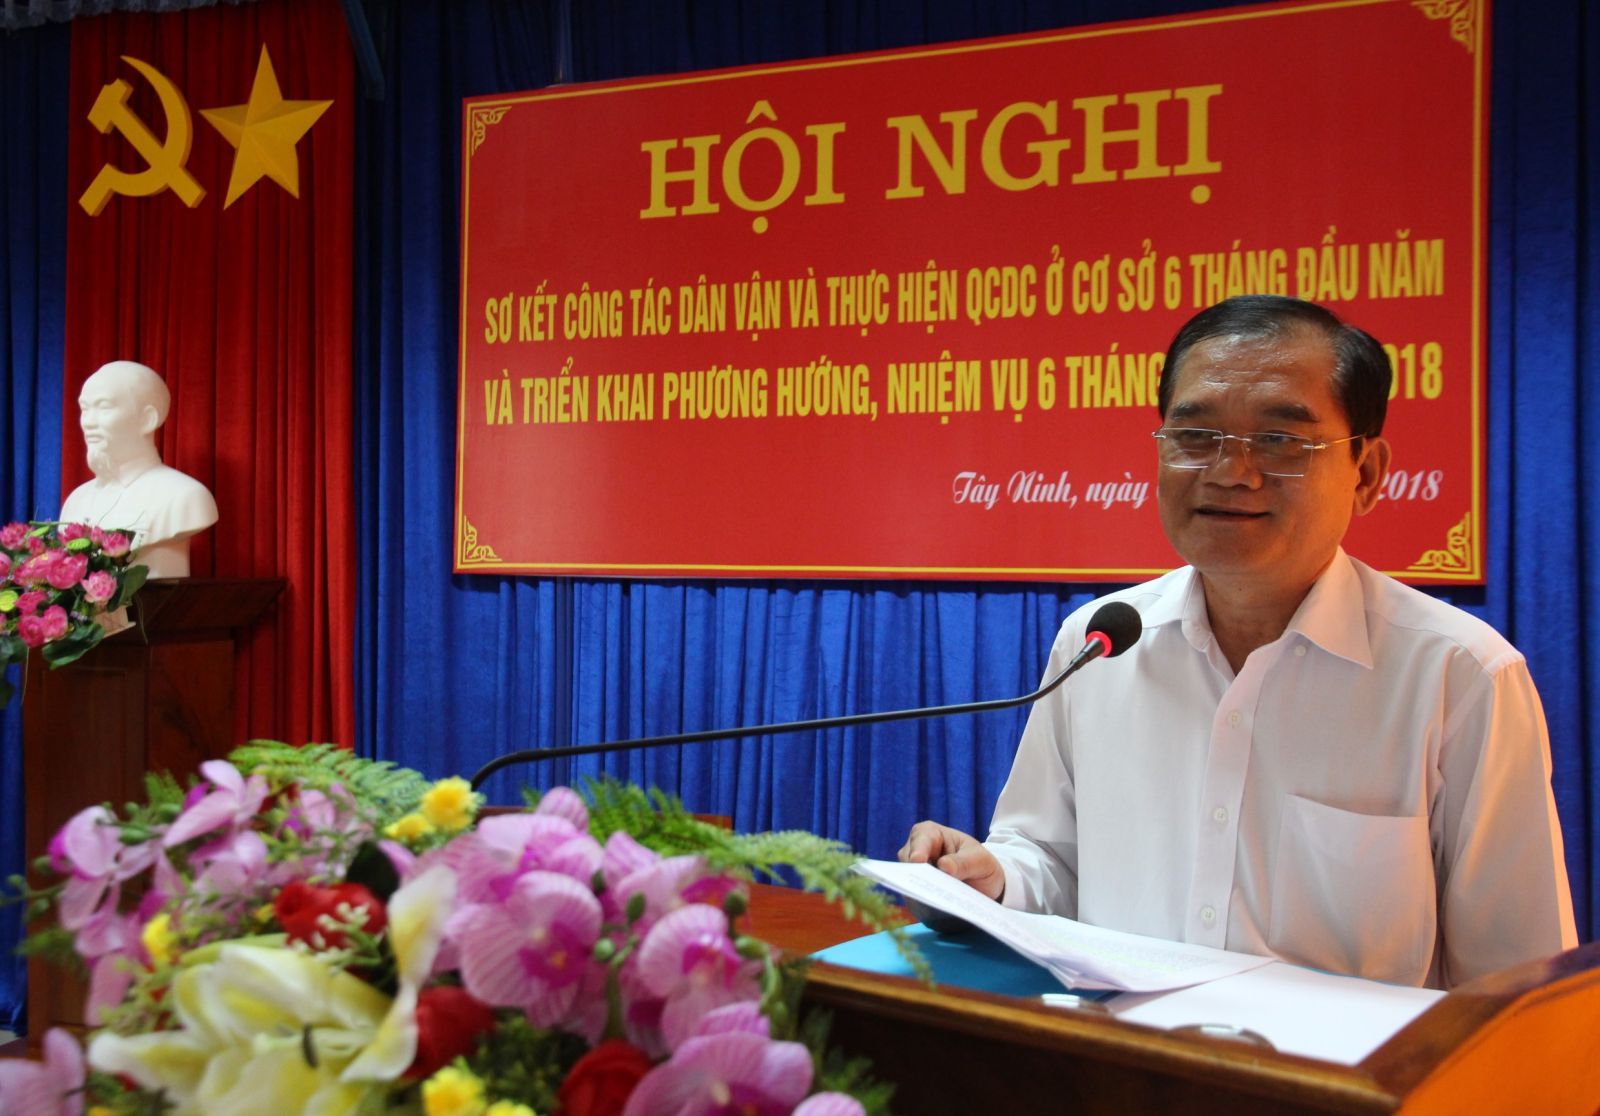 Điểm báo in Tây Ninh ngày 06.7.2018